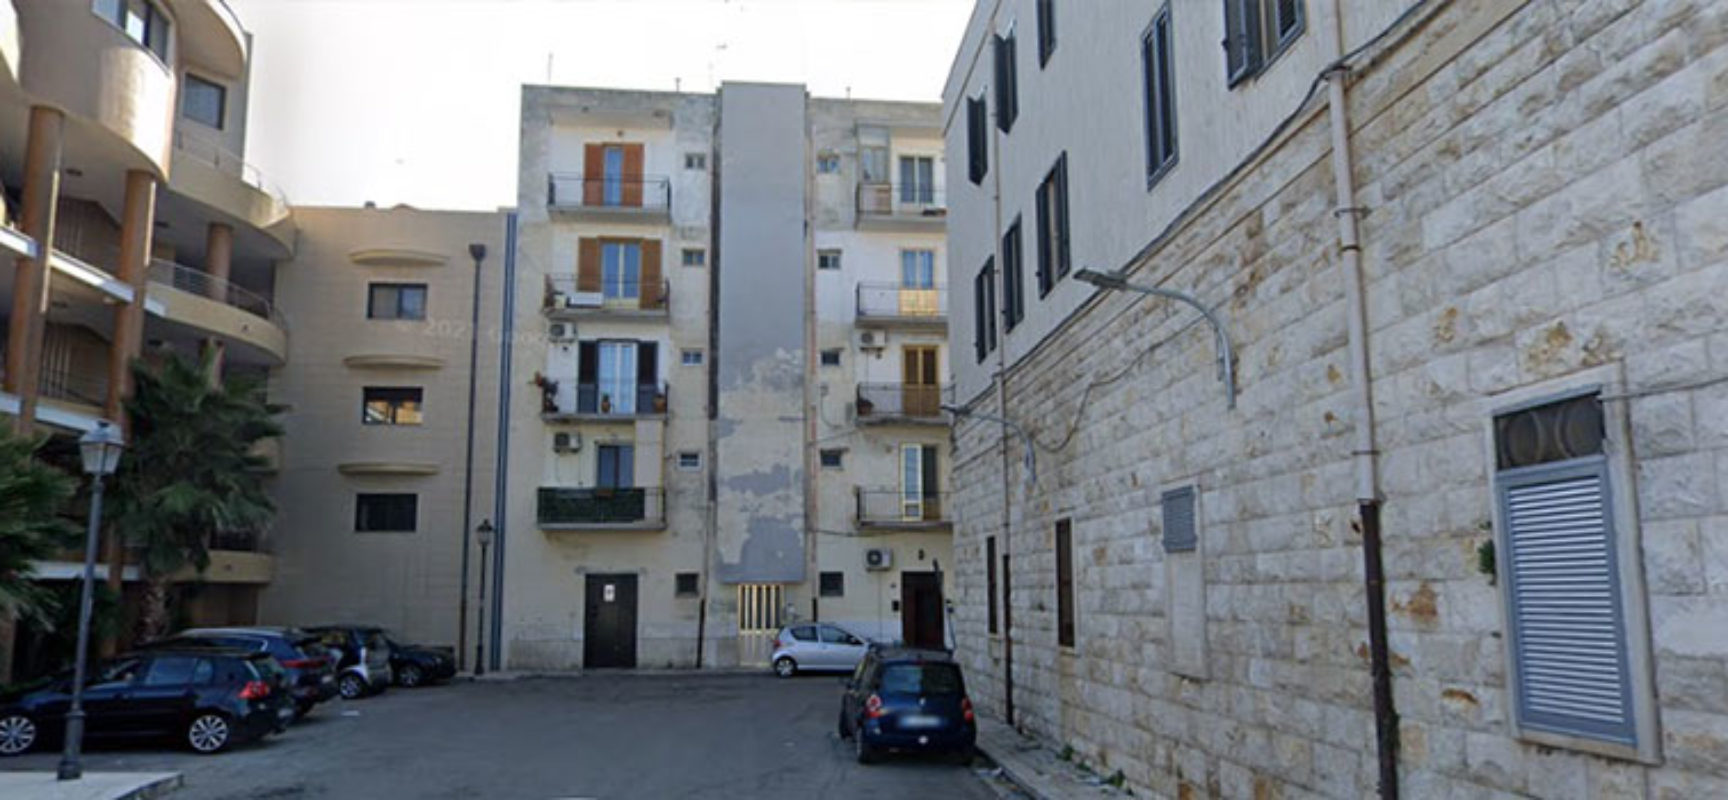 Due ordinanze dirigenziali di sgombero per alloggi comunali in via Taranto